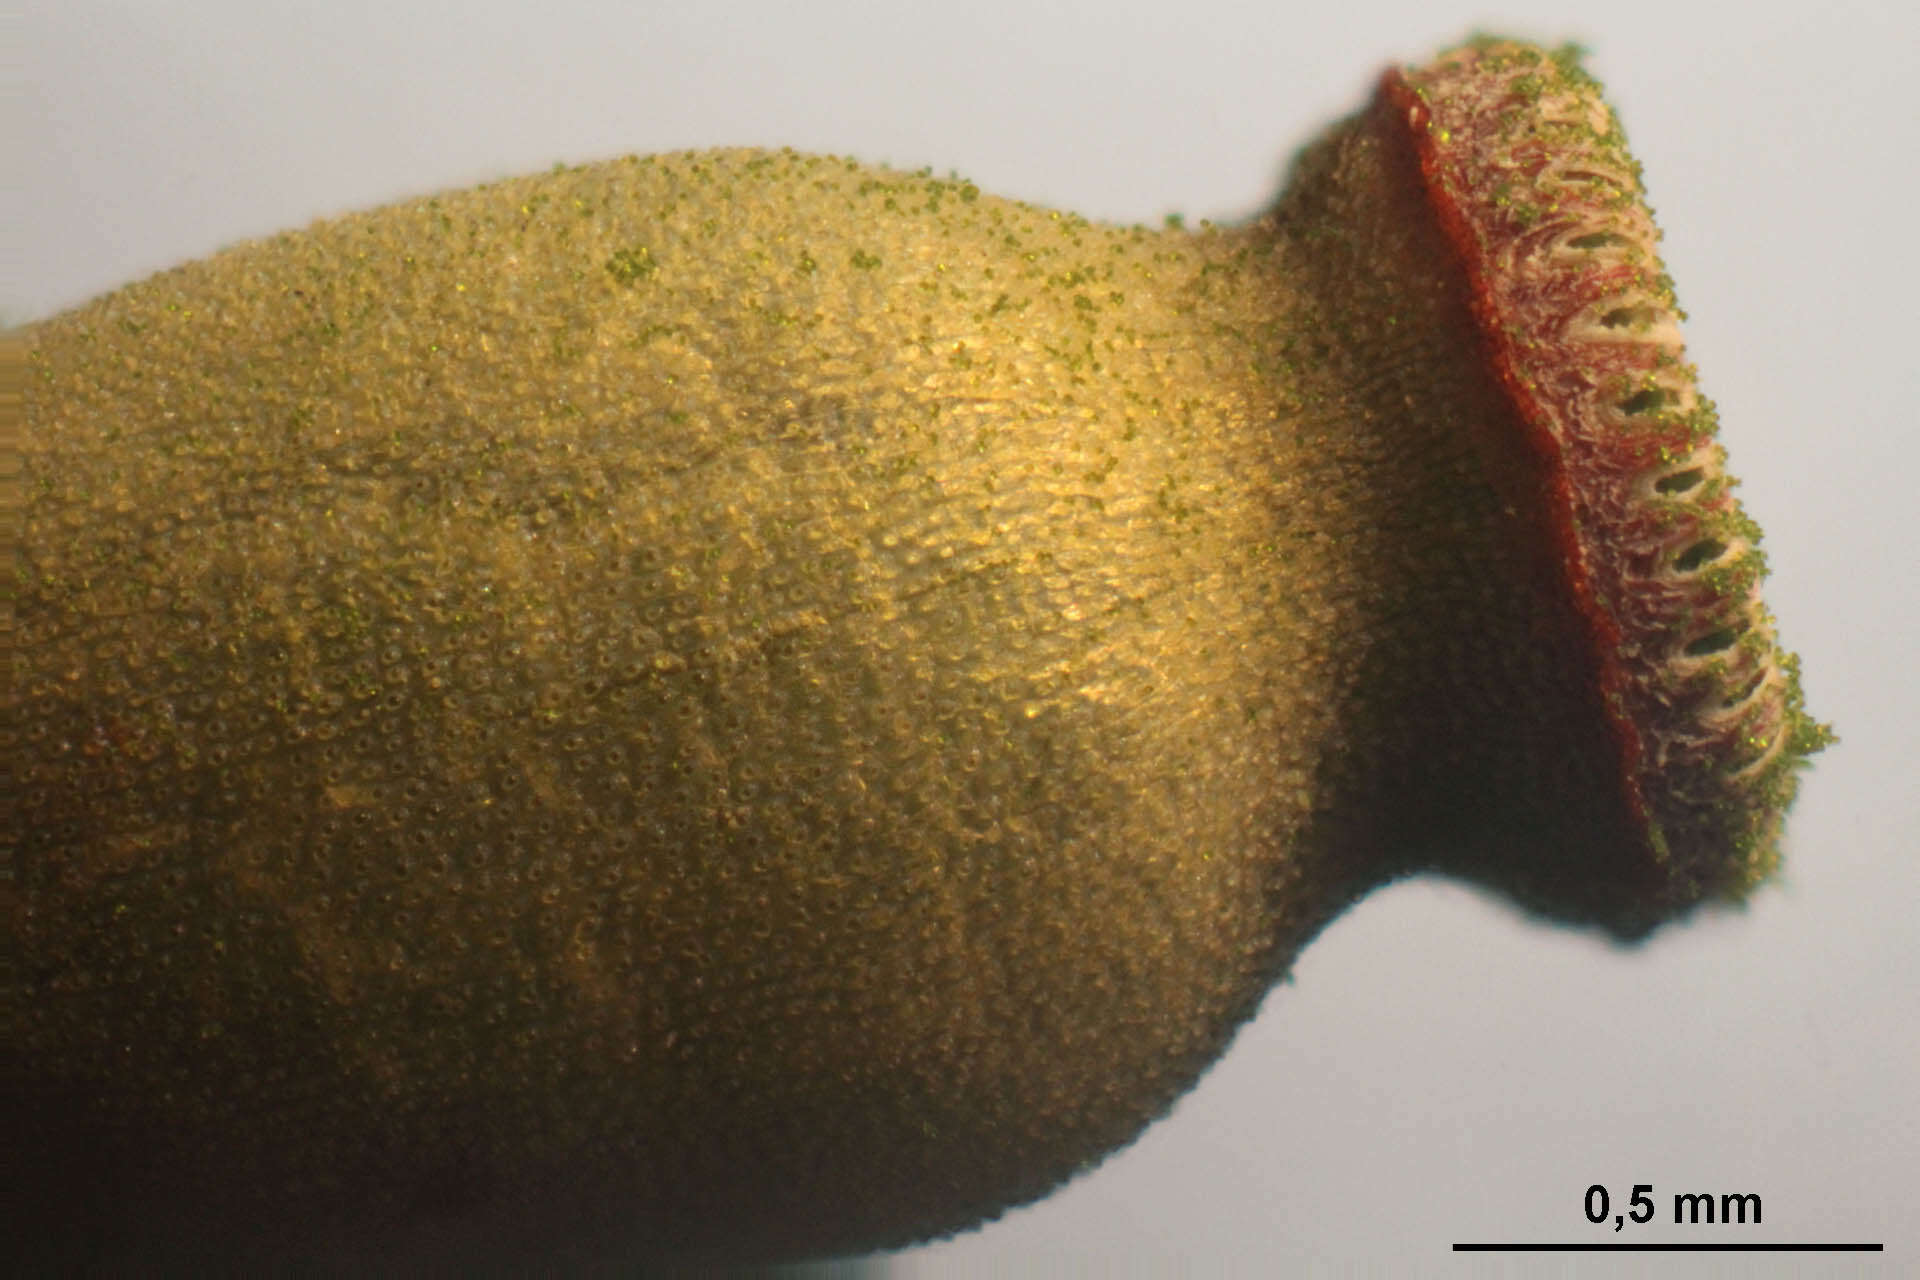 Image of aloe haircap